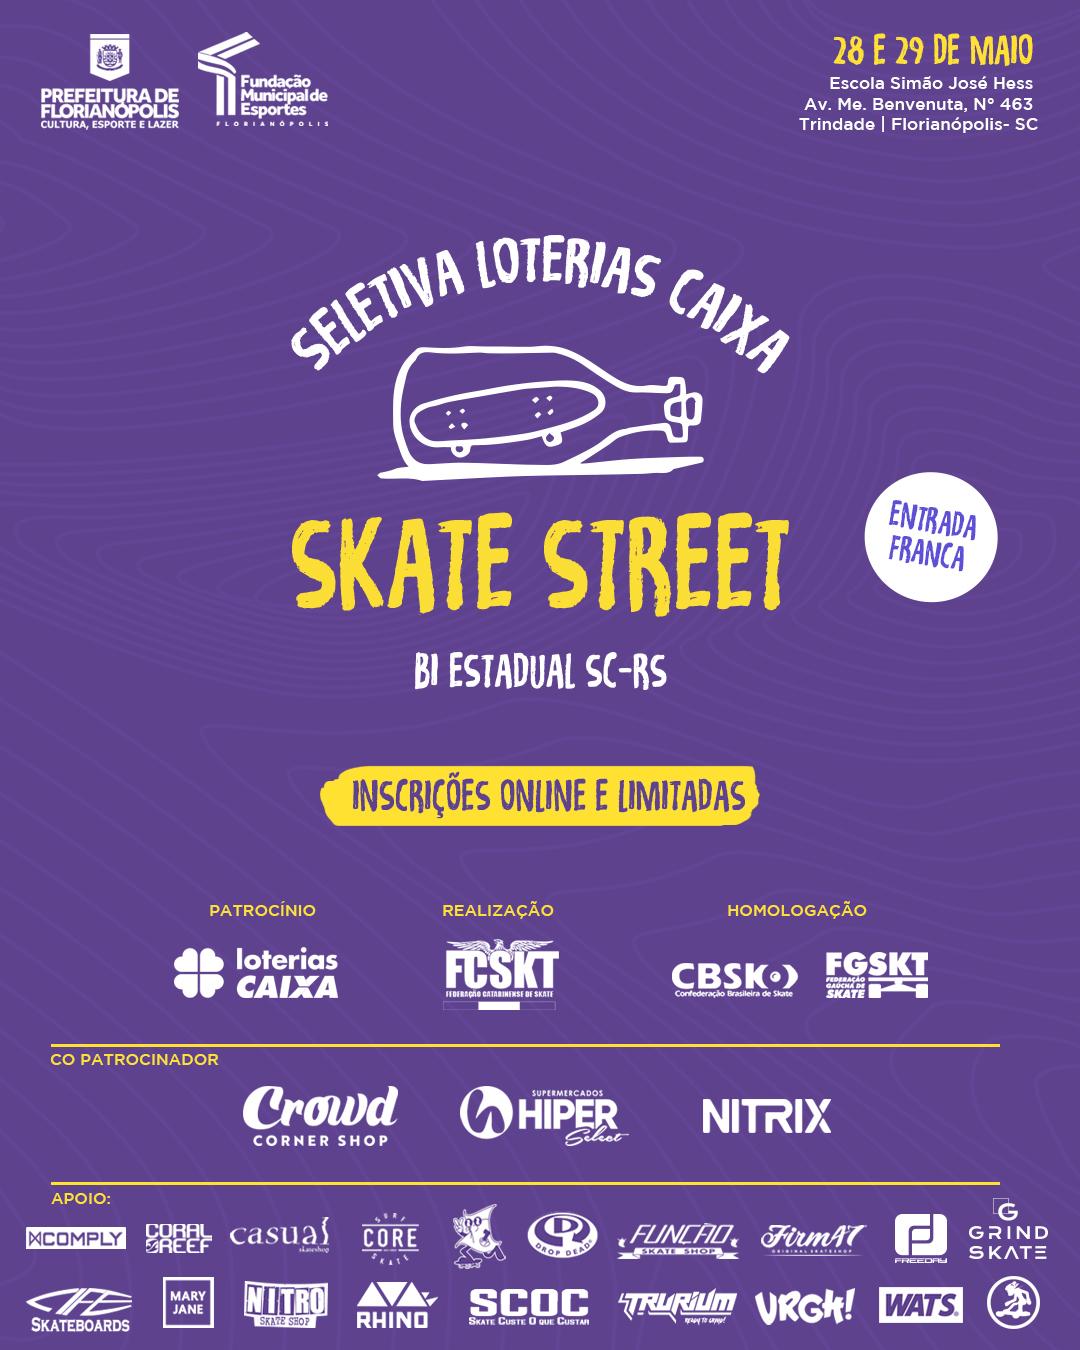 Seletiva Loterias CAIXA de Skate Street SC e RS acontecerá em Florianópolis em 28 e 29 de maio